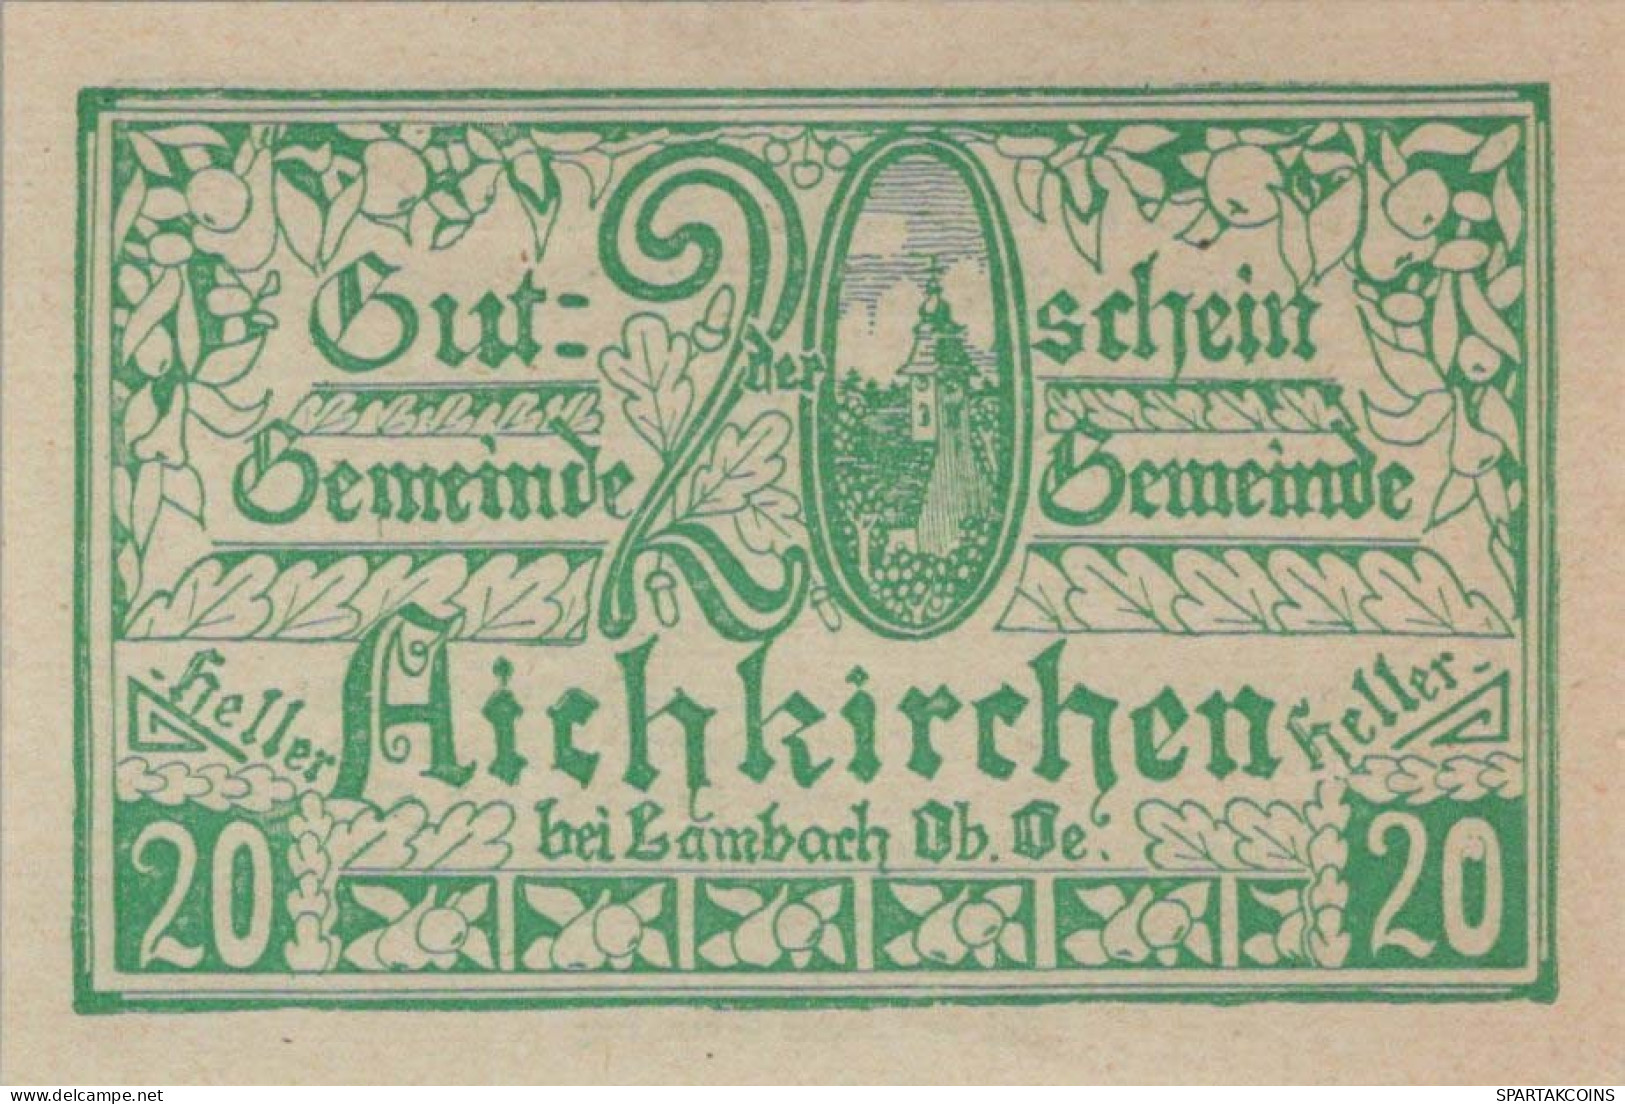 20 HELLER 1921 Stadt AICHKIRCHEN Oberösterreich Österreich Notgeld #PE157 - [11] Lokale Uitgaven